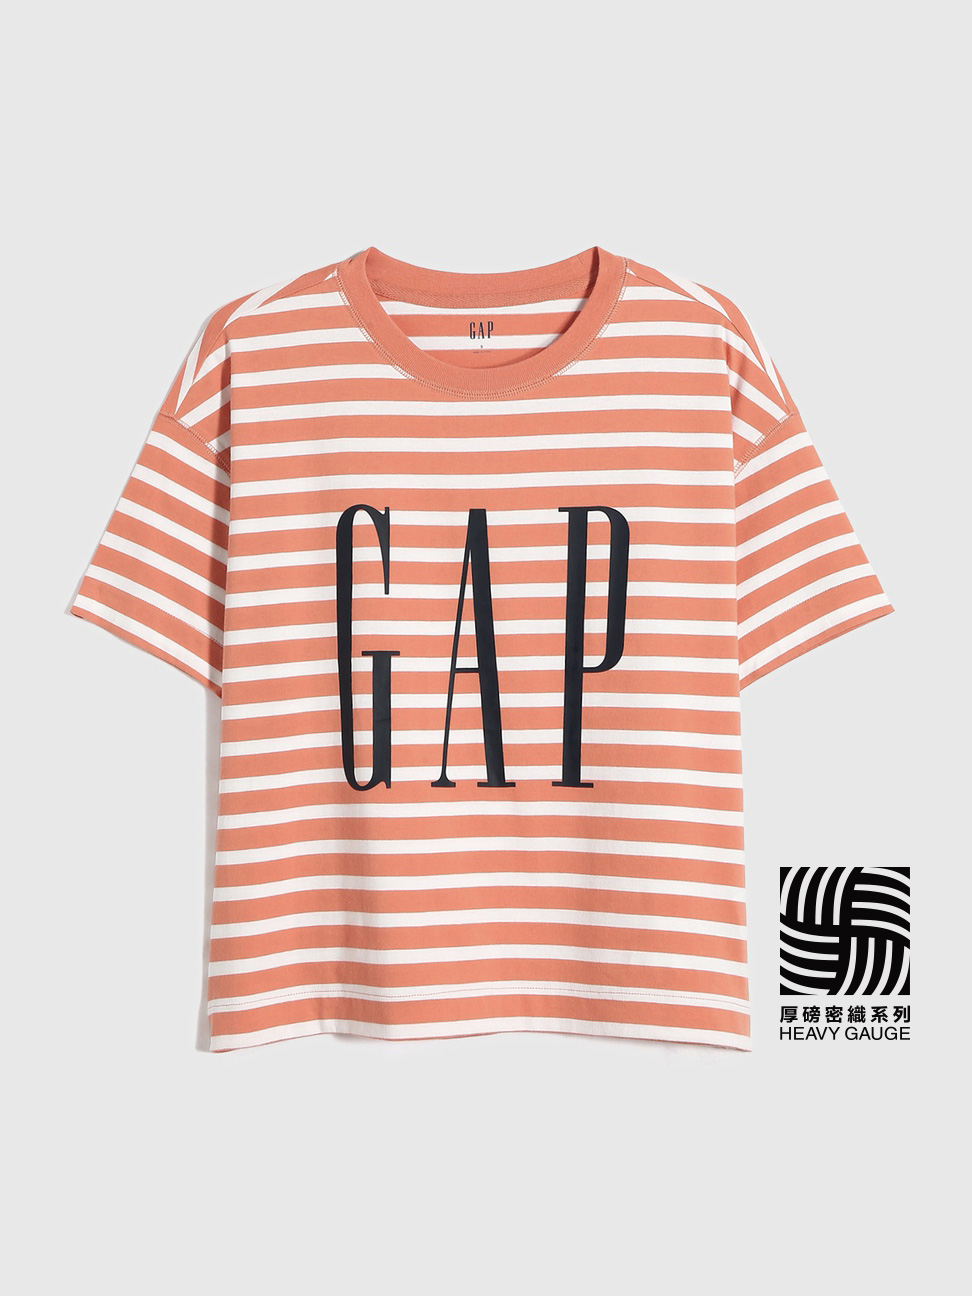 女裝|Logo寬鬆短袖T恤-橙色條紋